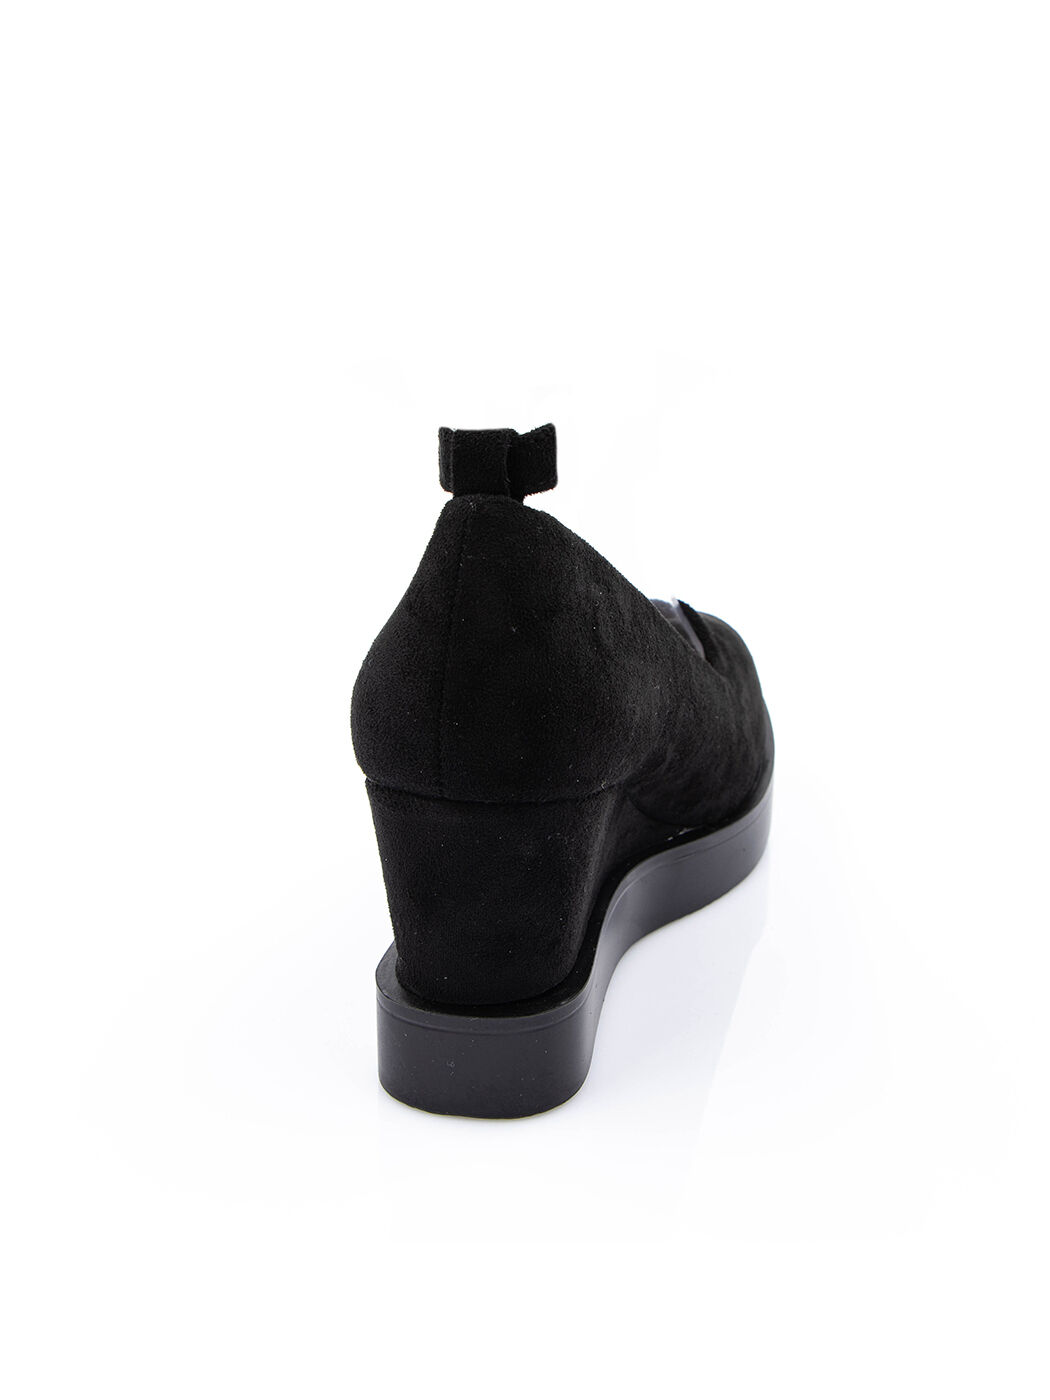 Туфли женские черные экозамша каблук устойчивый демисезон от производителя 2M вид 2